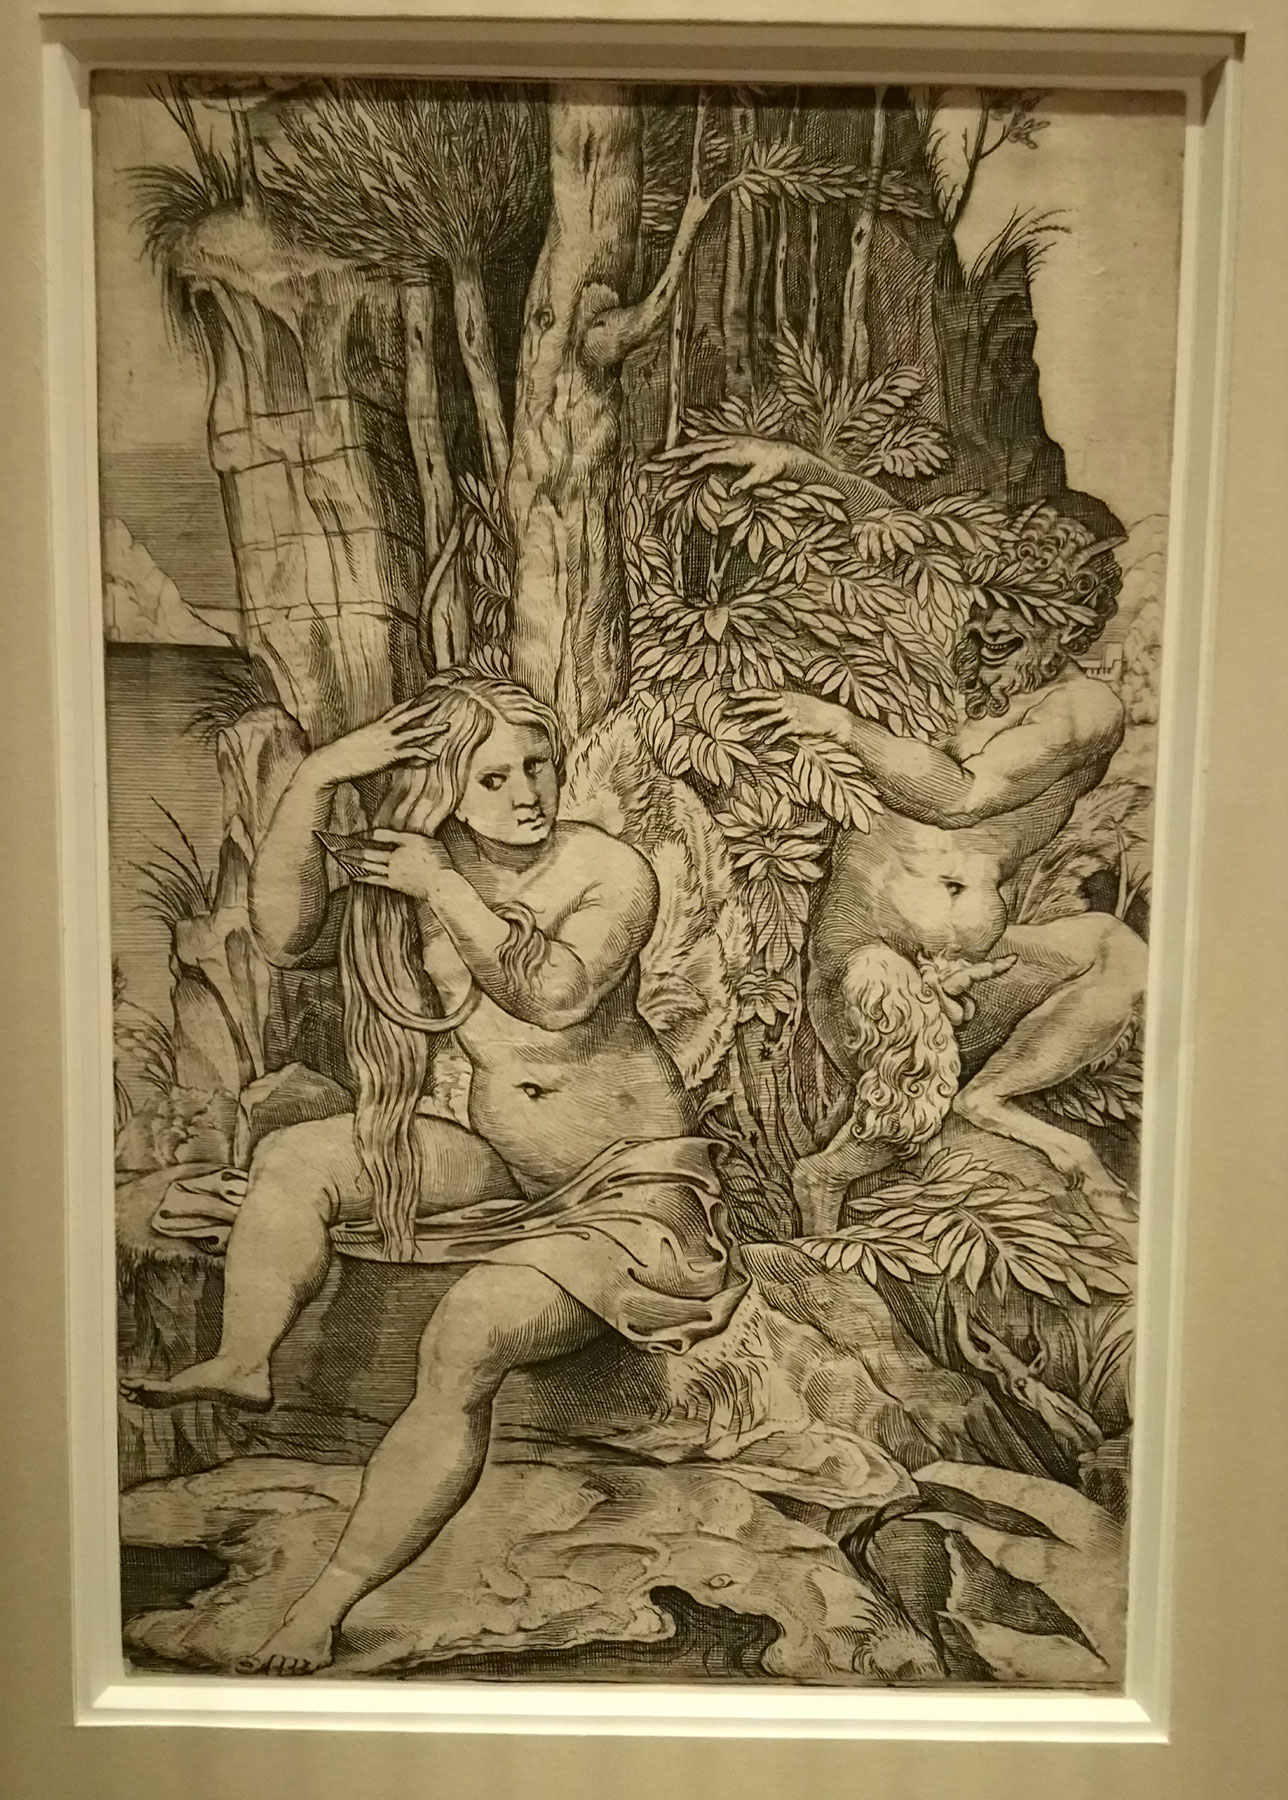 Marco Dente da Ravenna (da Raffaello), Venere e un satiro (1516 circa; incisione a bulino, 262 x 172 mm; Vienna, Albertina)
